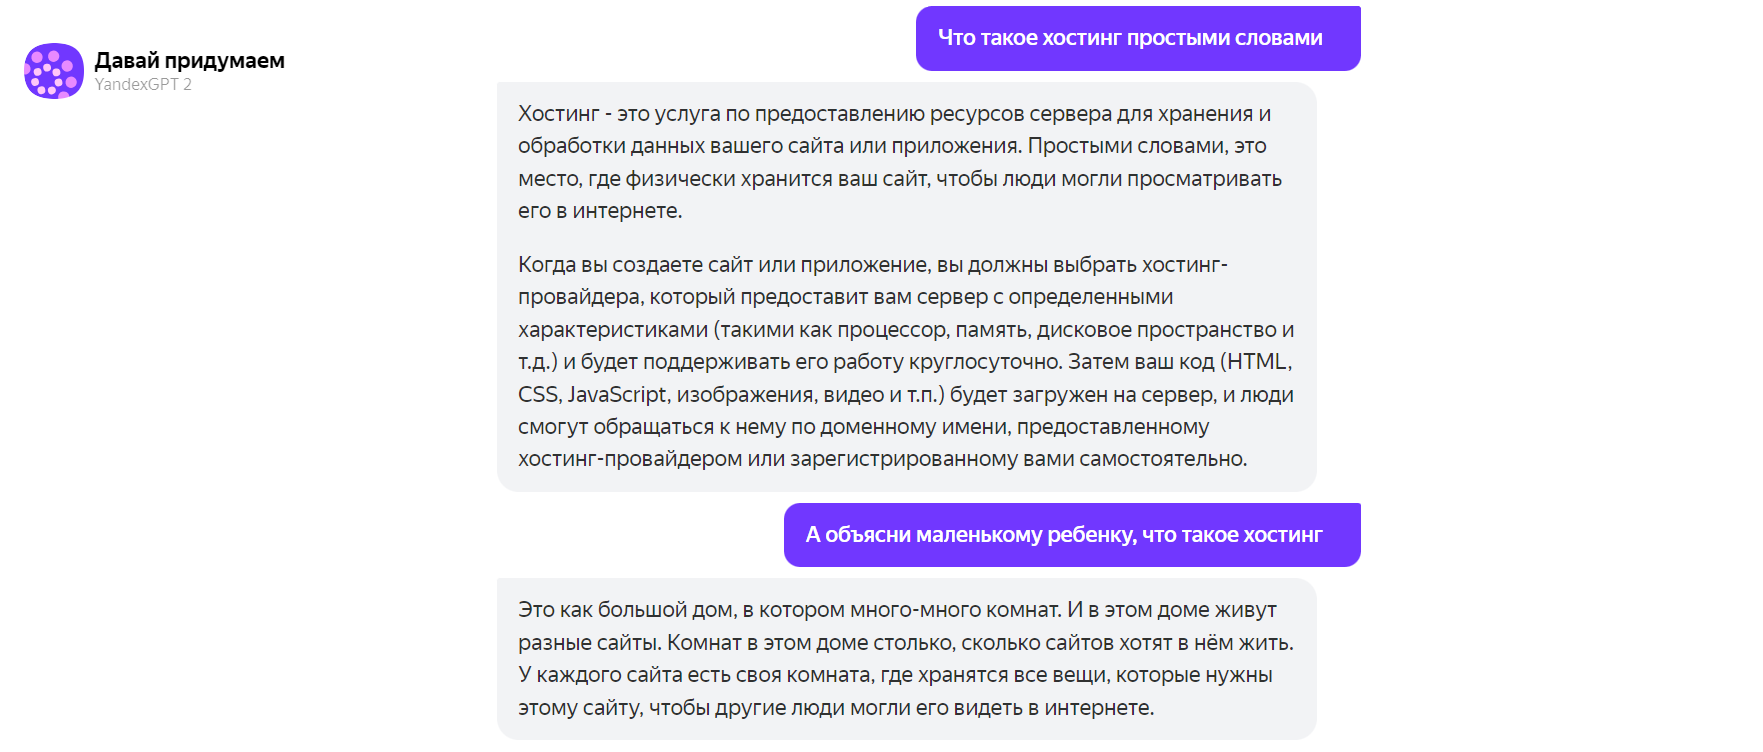 Пример работы YandexGPT 2 